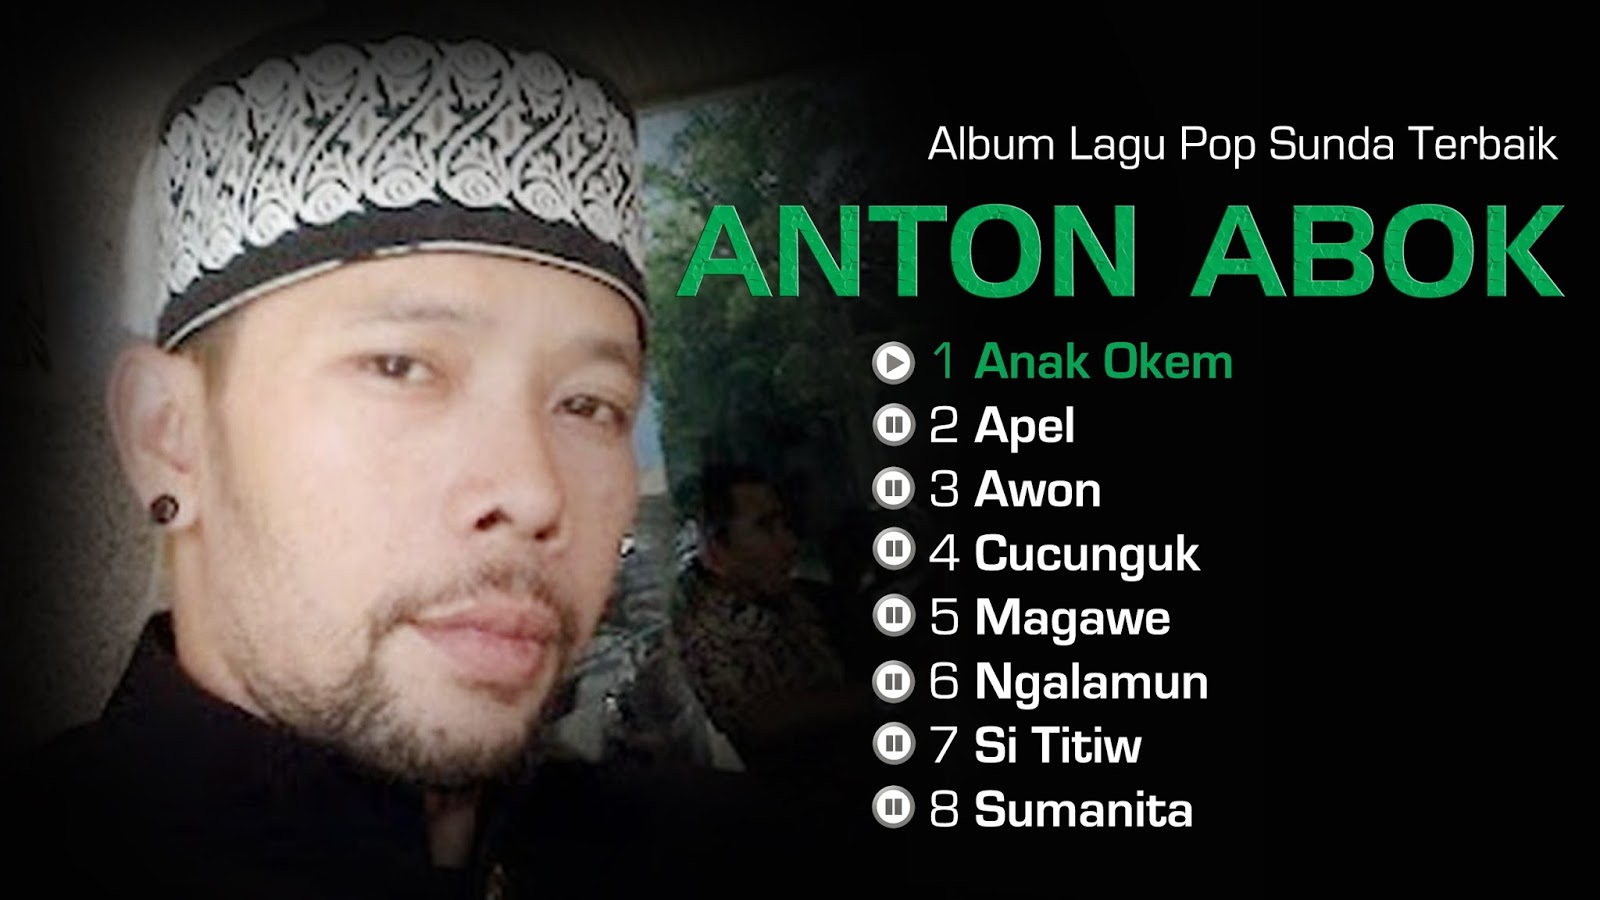 Download Lagu Sunda  Anton Abok Full Album Terbaik Paling 